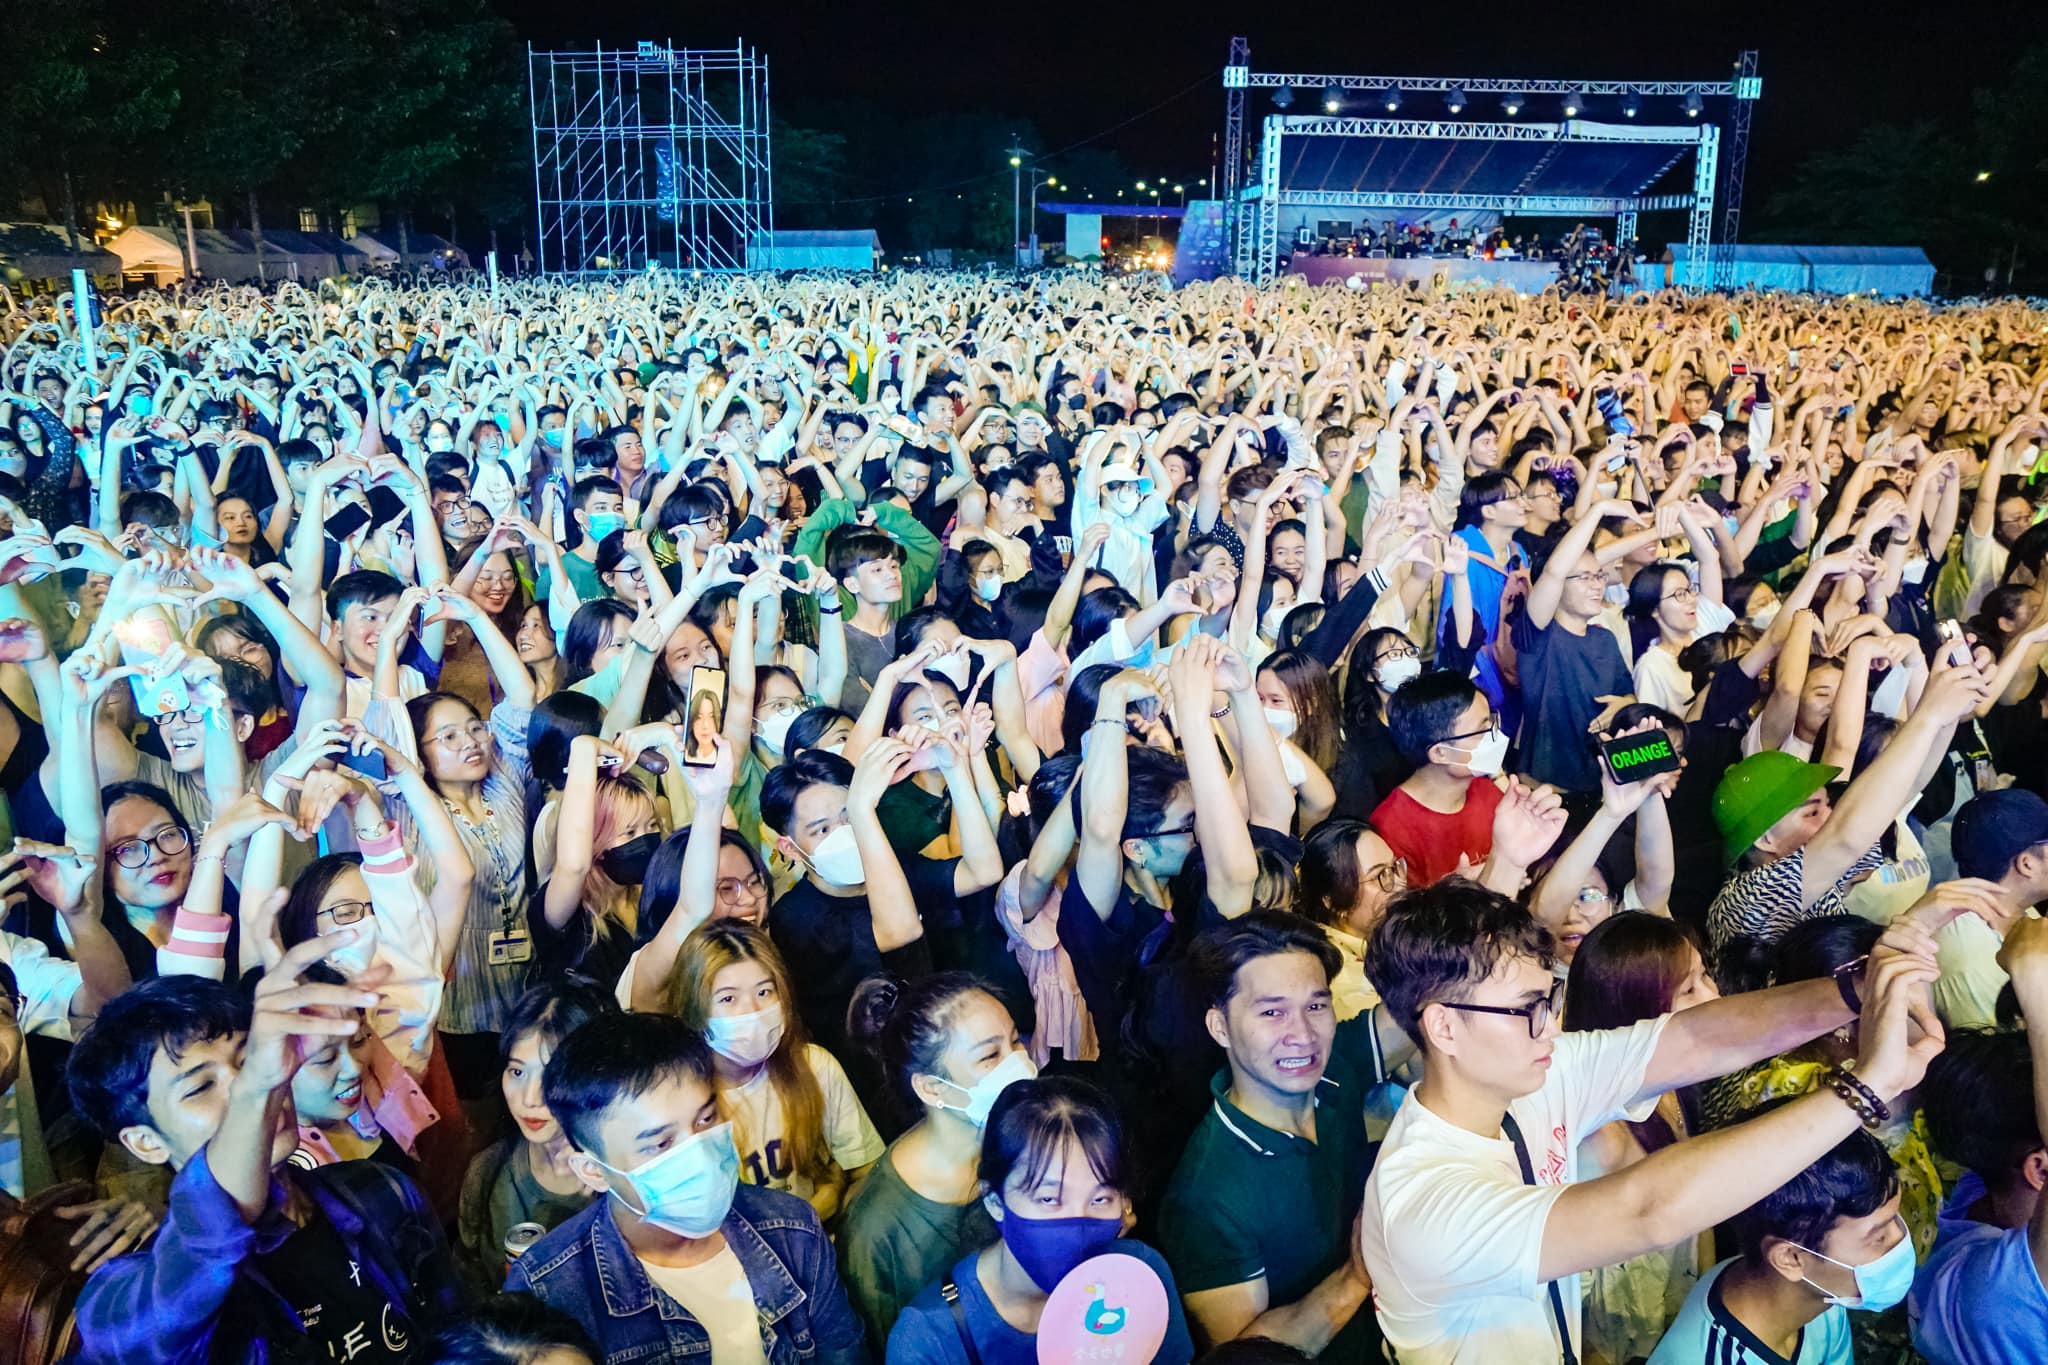 Bật mí ekip “đứng sau” đêm nhạc MTV School Fest bùng nổ cùng 40.000 sinh viên tại Ký túc xá Đại học Quốc gia TP. Hồ Chí Minh.